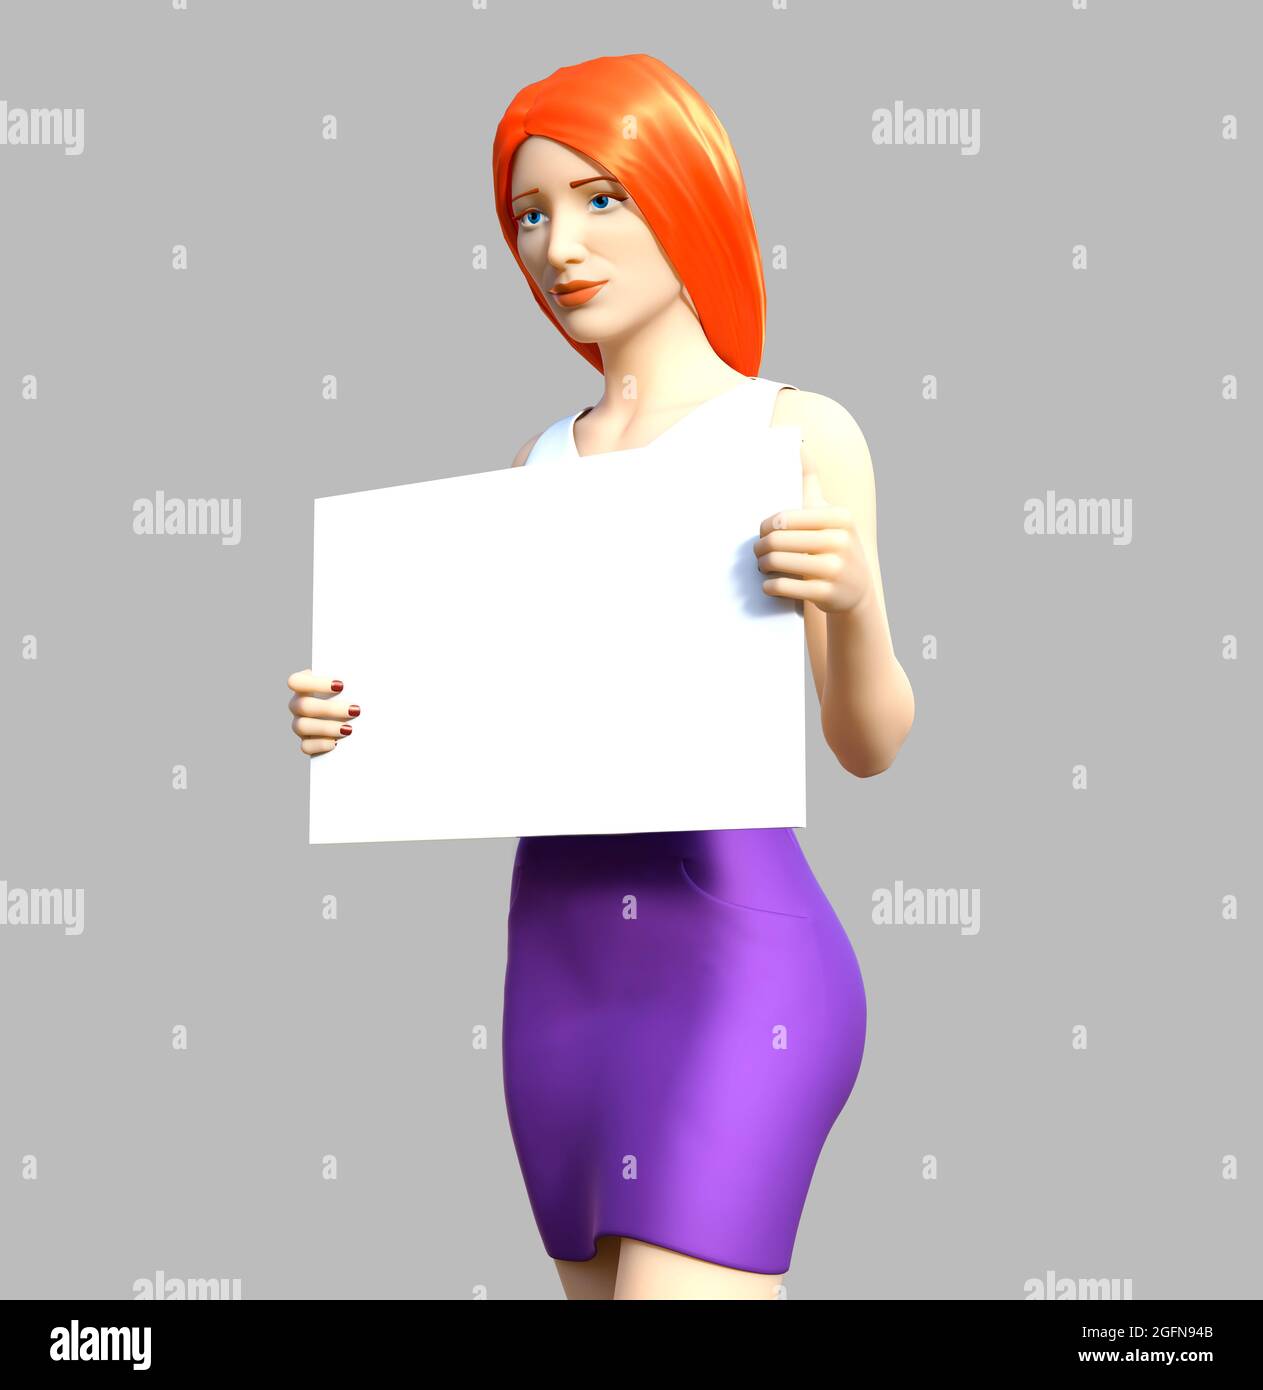 Image 3D isolée de rendu d'une adolescente à tête rouge en jupe violette et réservoir blanc sur le dessus debout et tenant le tableau blanc sur fond gris. Banque D'Images